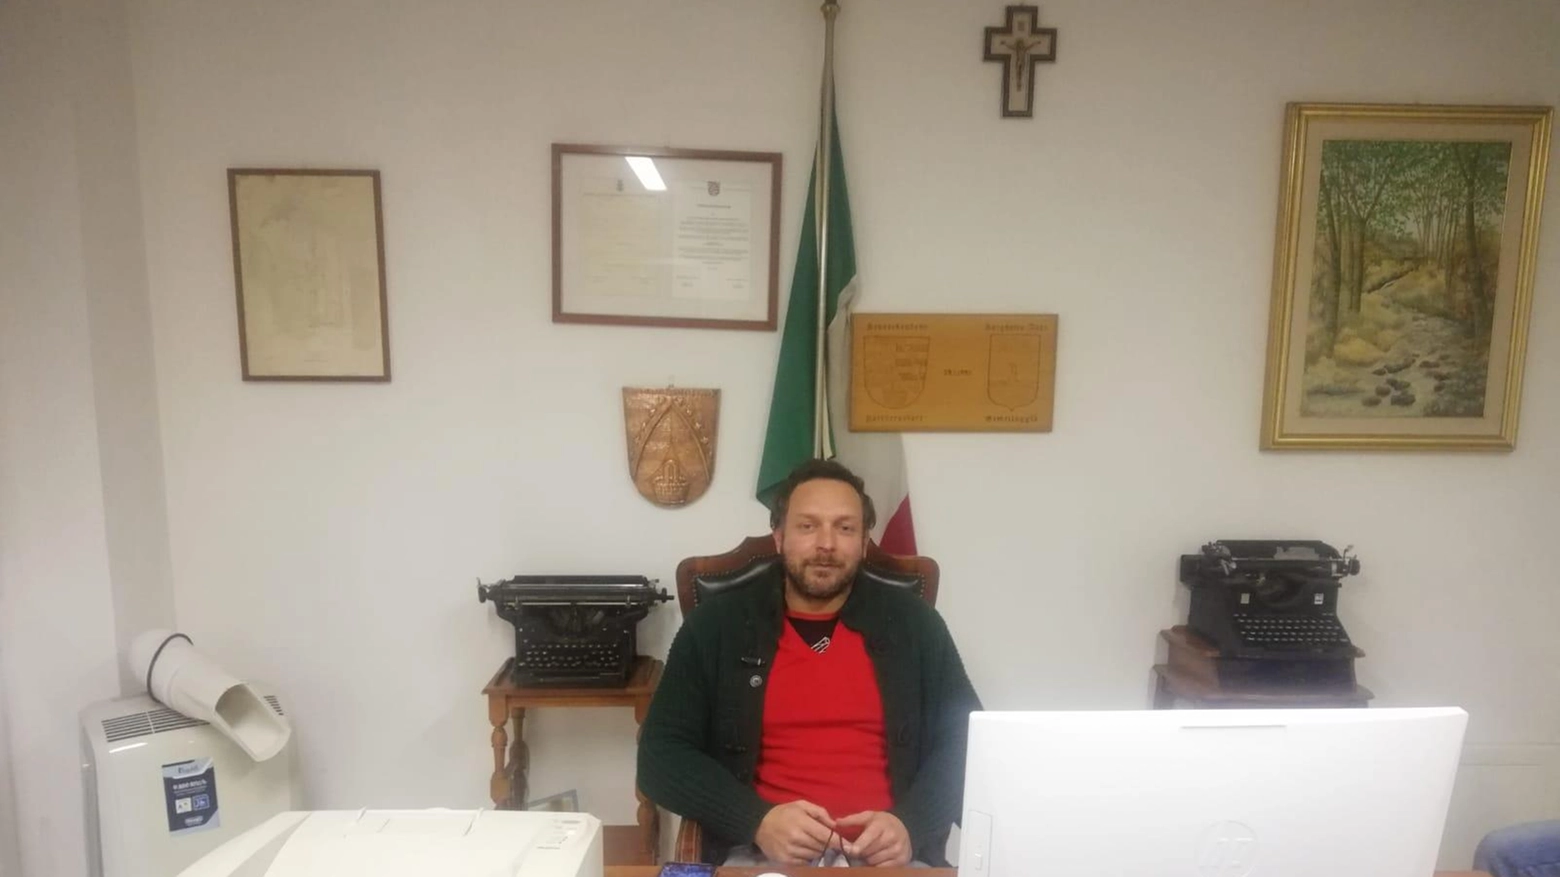 

"Appello alla Prefettura: troppi migranti a Borghetto Vara"